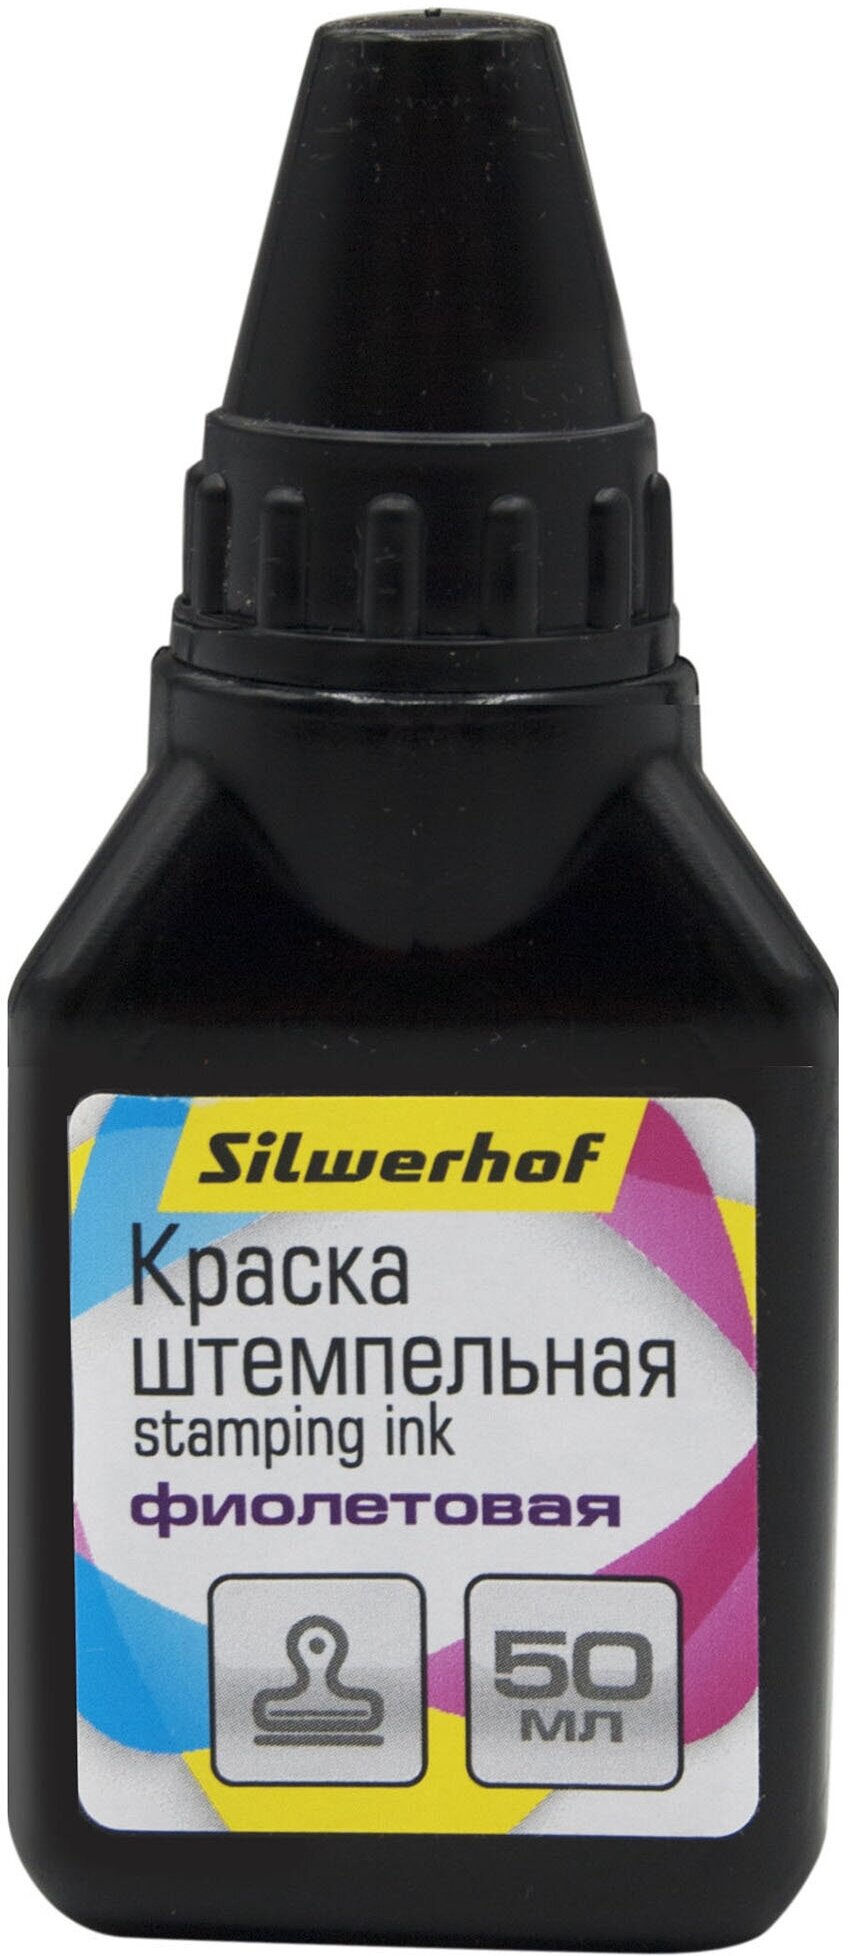 Краска штемпельная Silwerhof оттис: фиолетовый водный/спиртовой 50мл